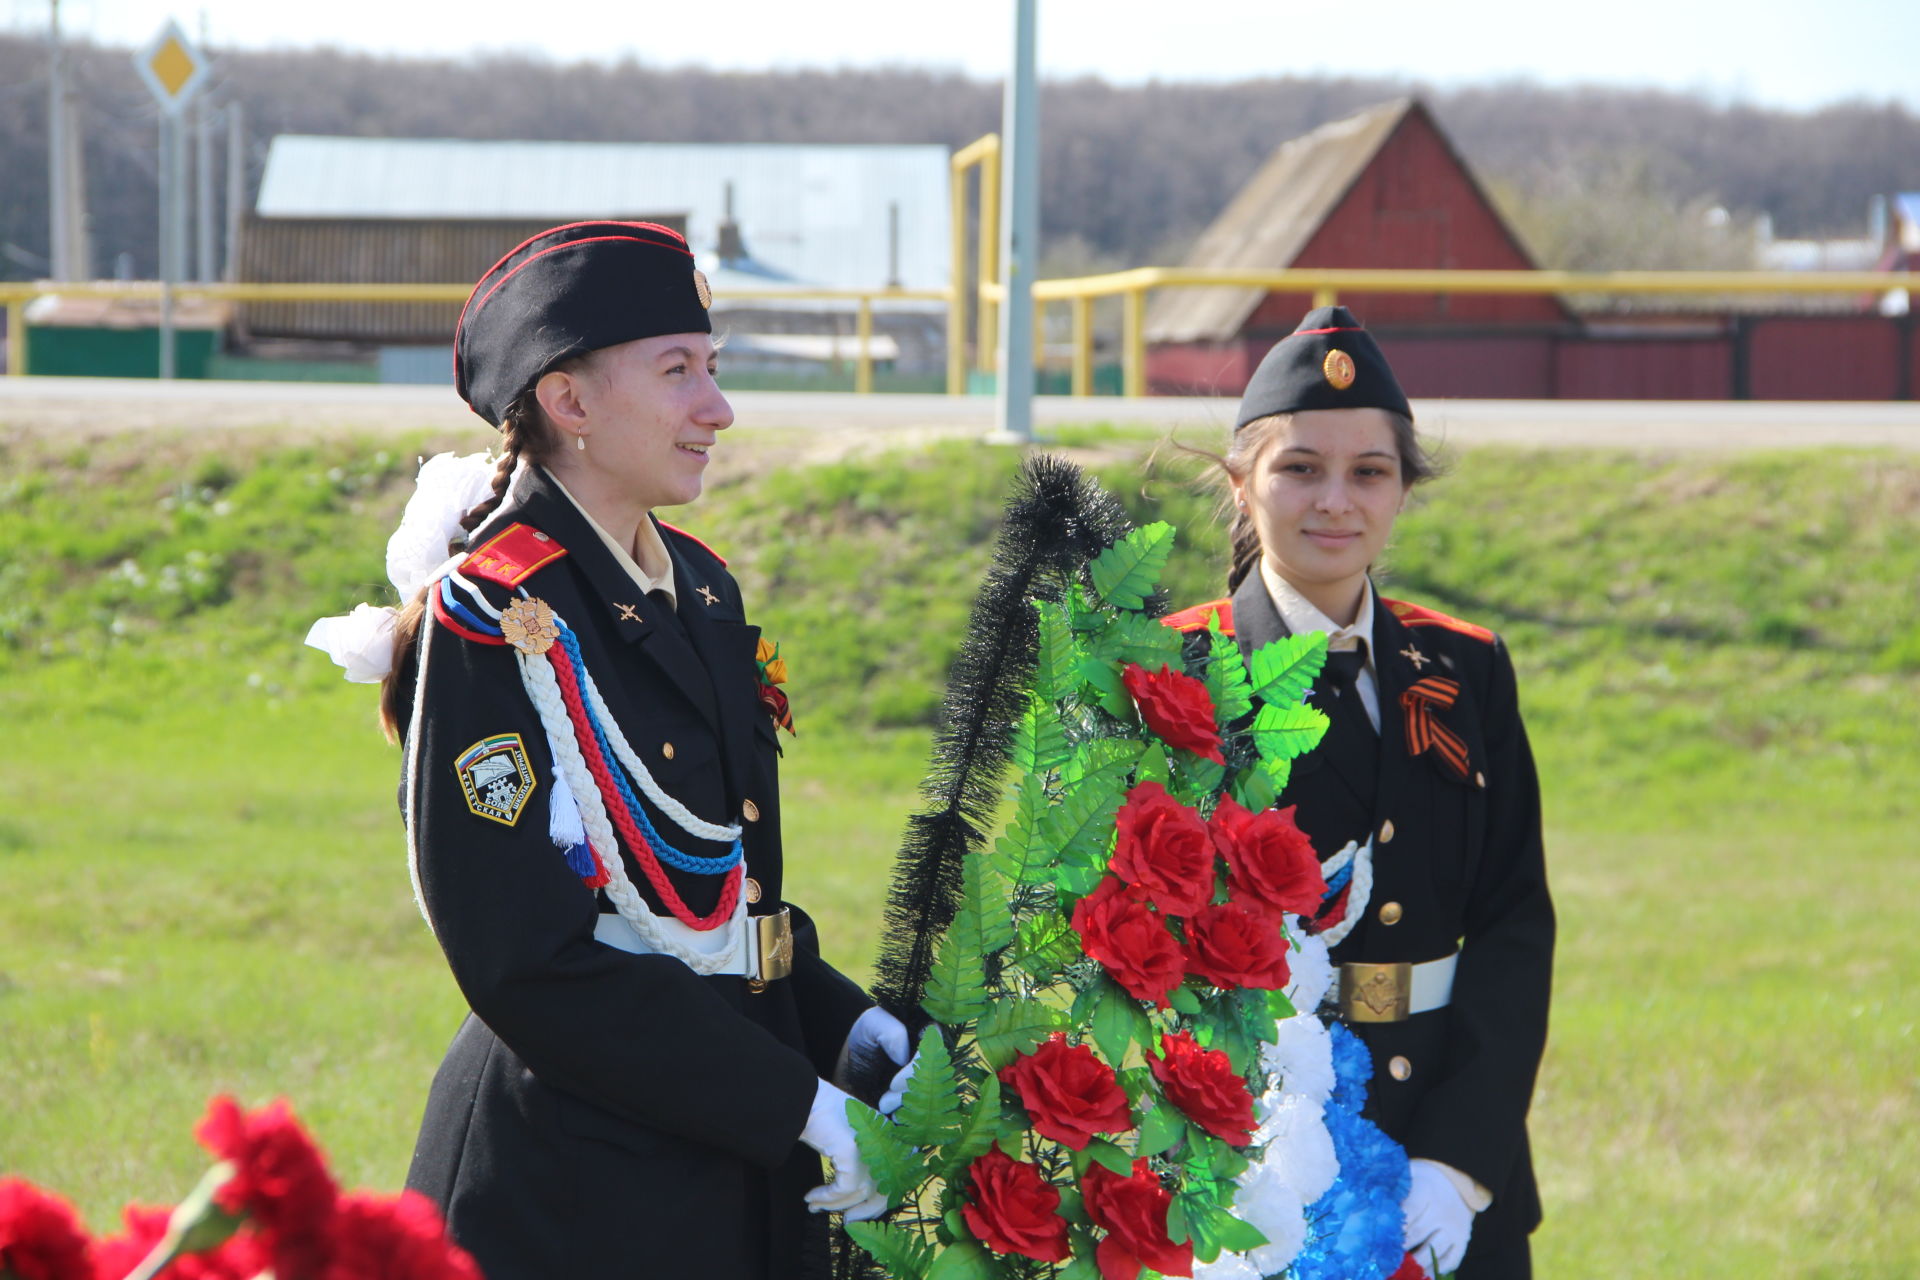 В Болгаре возложили цветы к памятнику Казанскому обводу